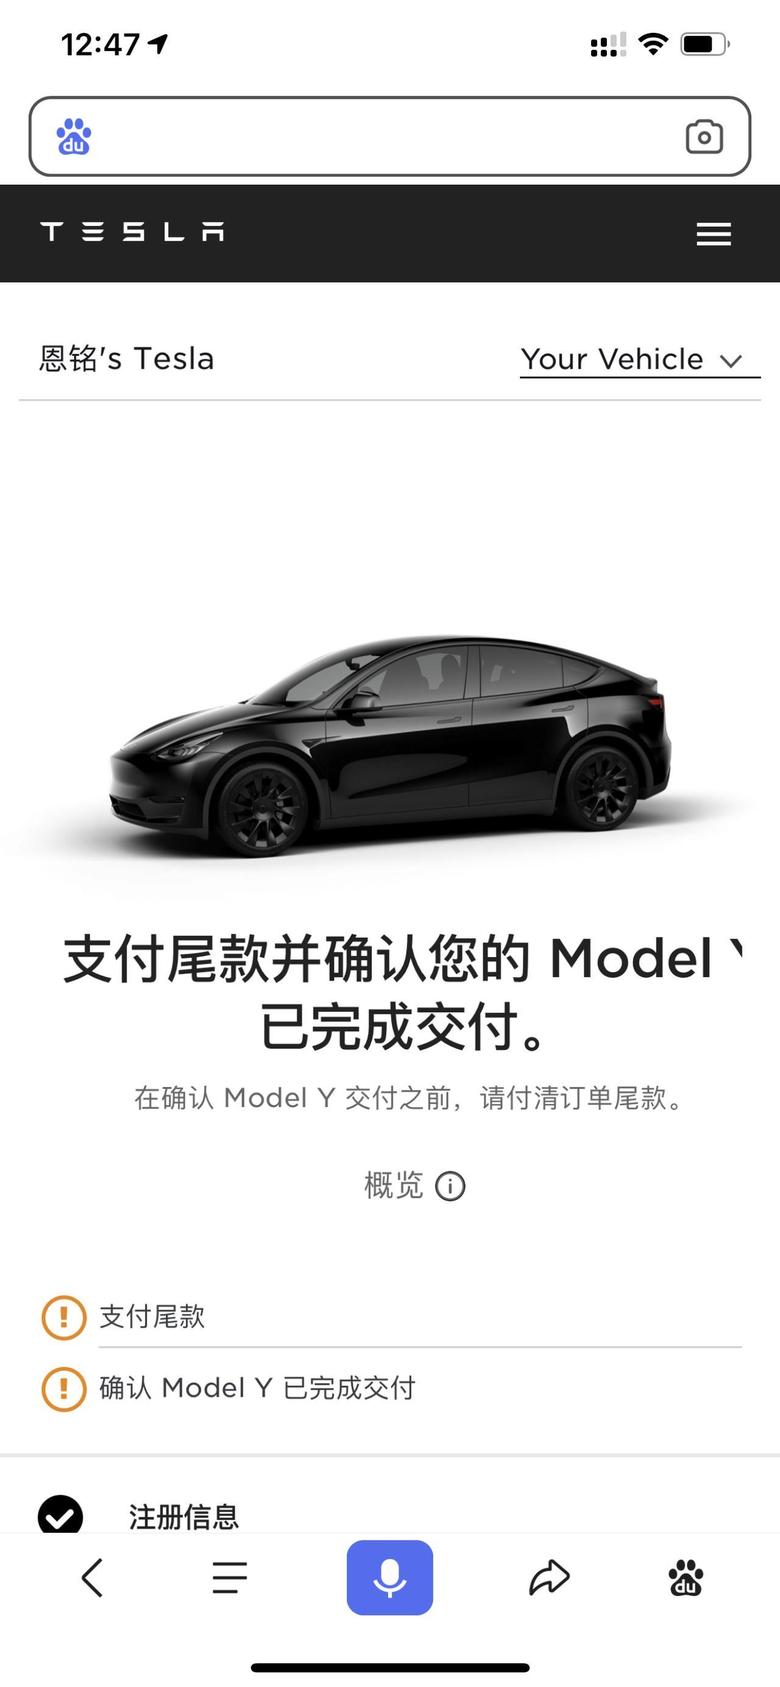 model y 销售今天打电话说车在路上了，22号到北京，23日上午提车，下午办理上牌